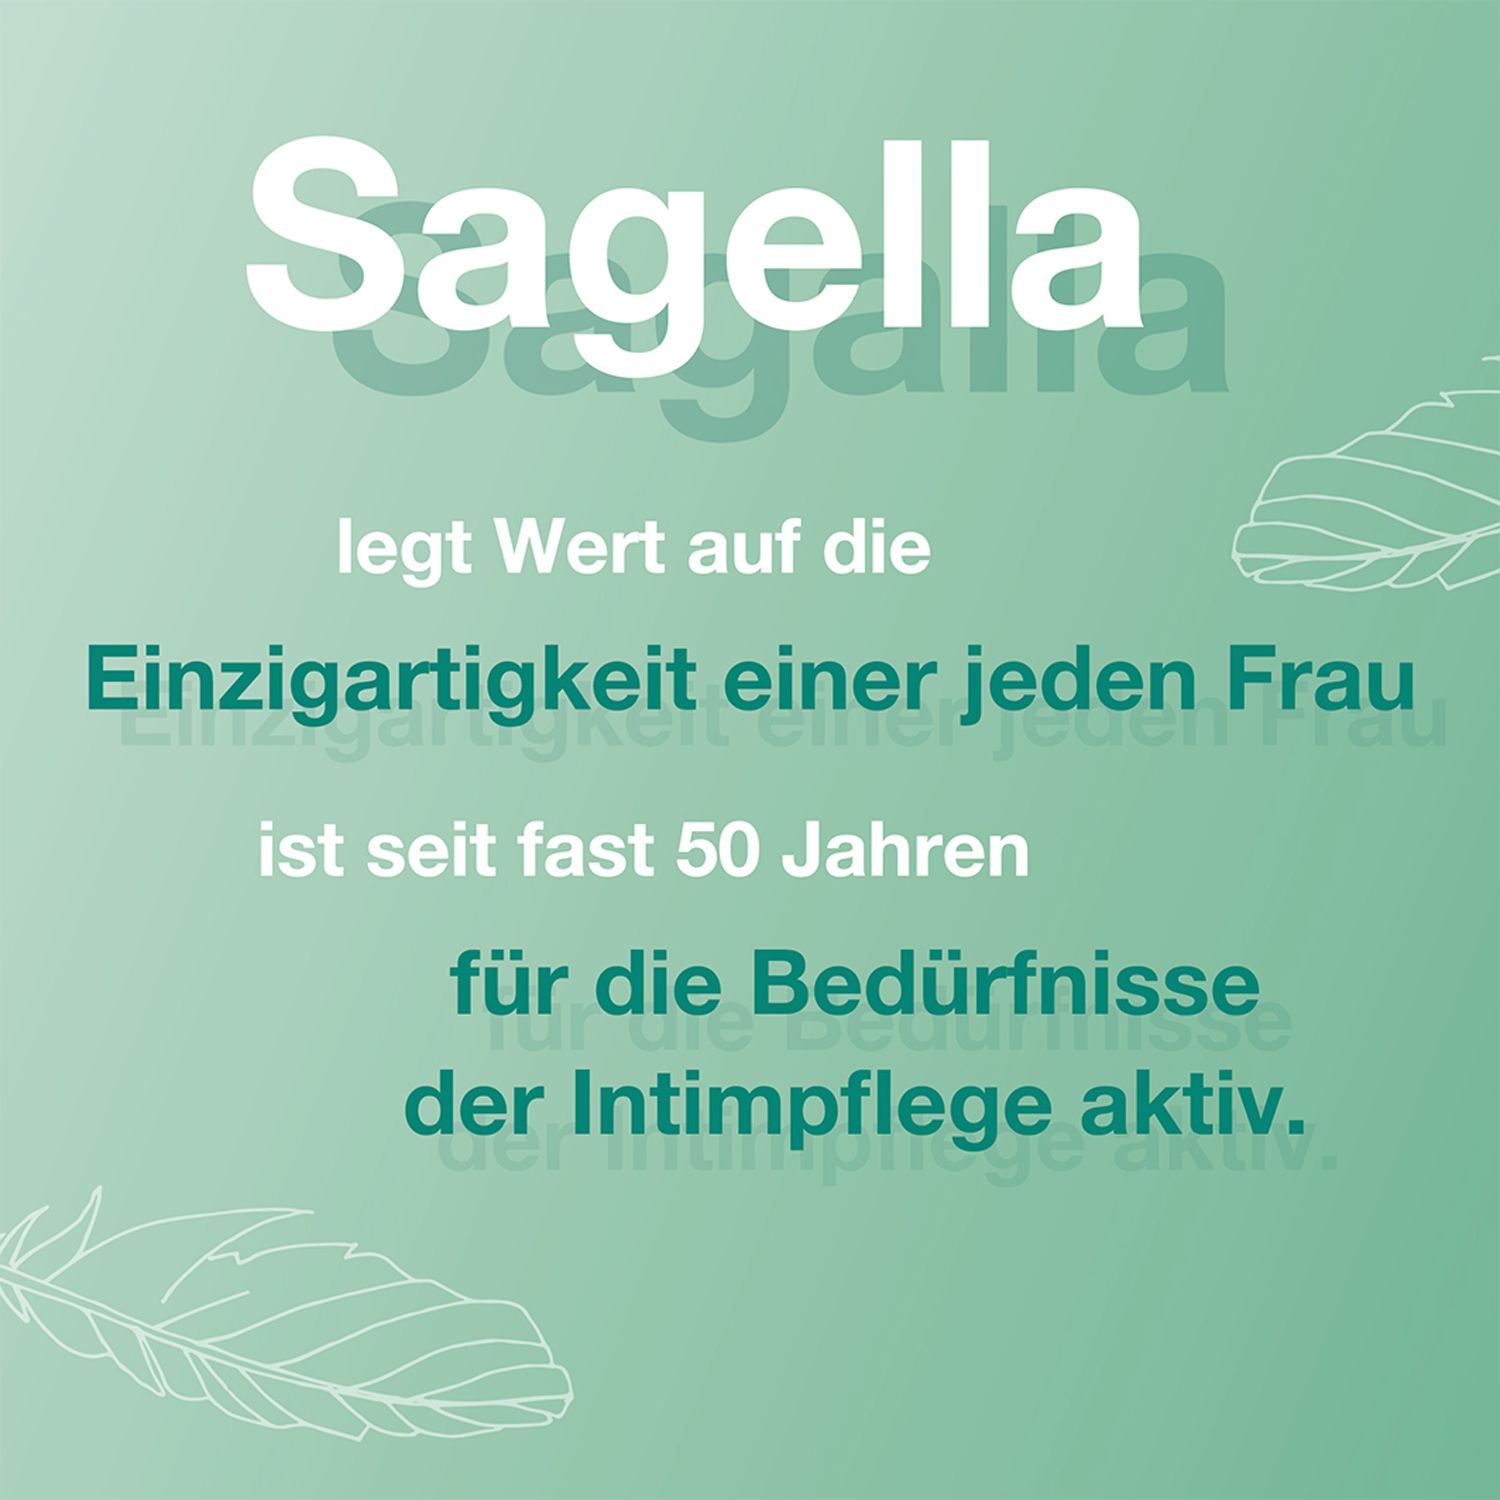 SAGELLA hydramed: Antibakterielle Waschlotion für den Intimbereich